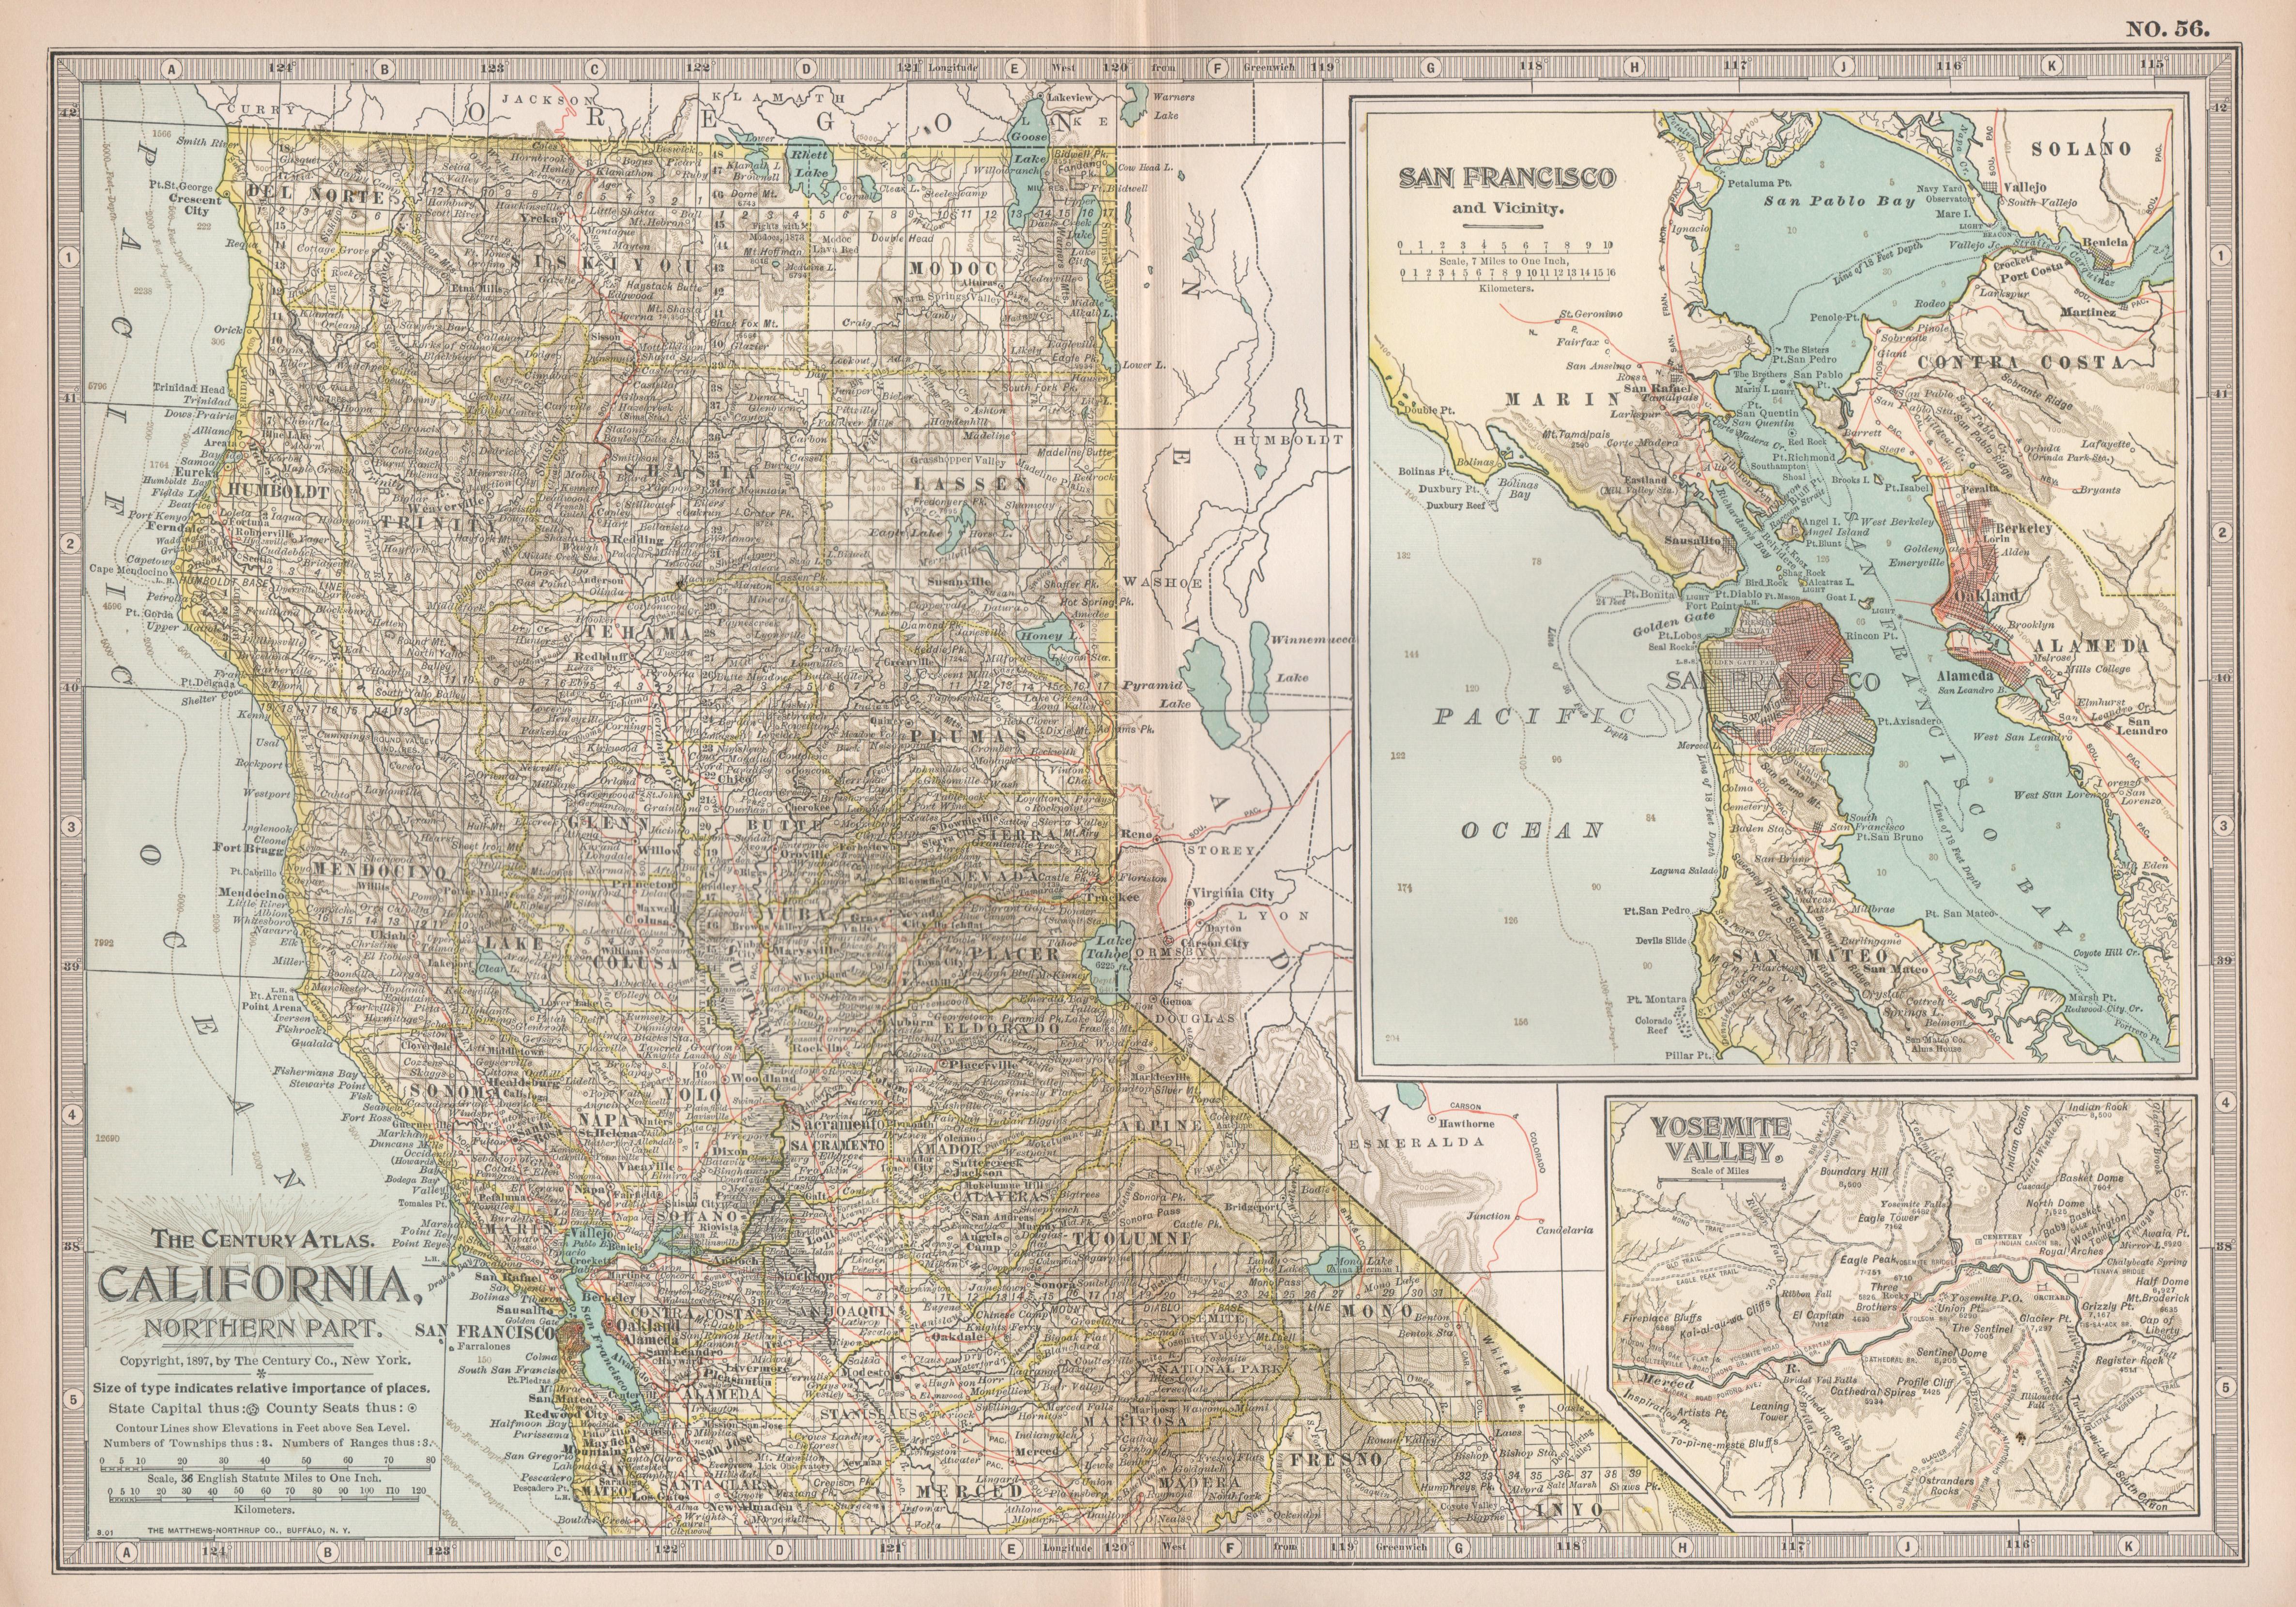 Californie, partie nord. Carte ancienne de l'État Atlas des États-Unis du XXe siècle